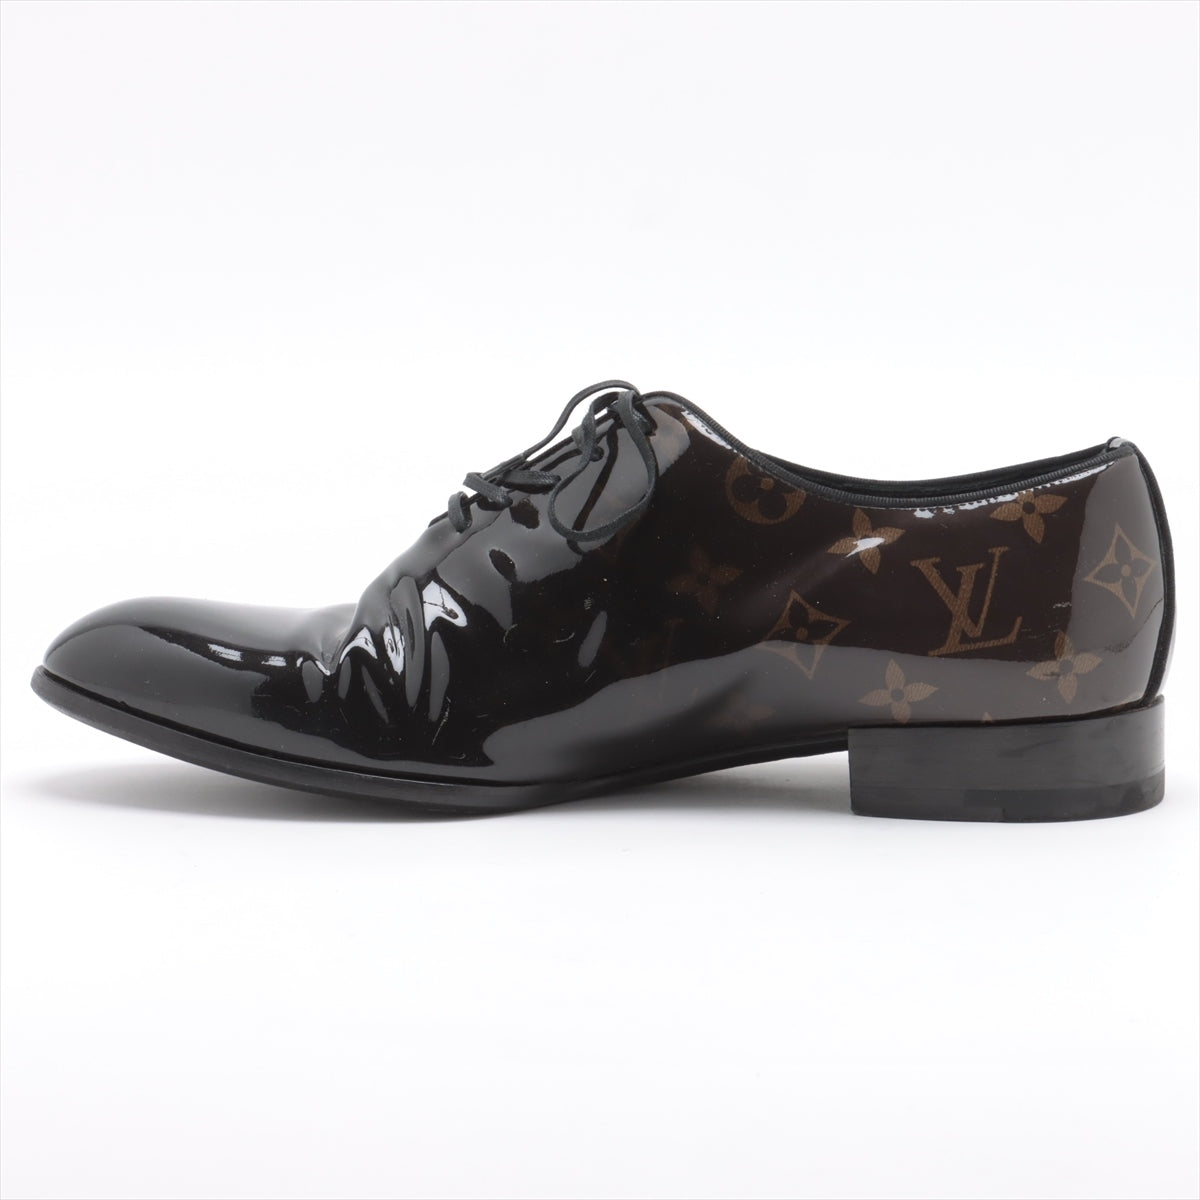 Louis Vuitton LV Vendôme line 18 years Patent leather Dress shoes 6 1/2 Men's Black × Brown DI0198 Monogram